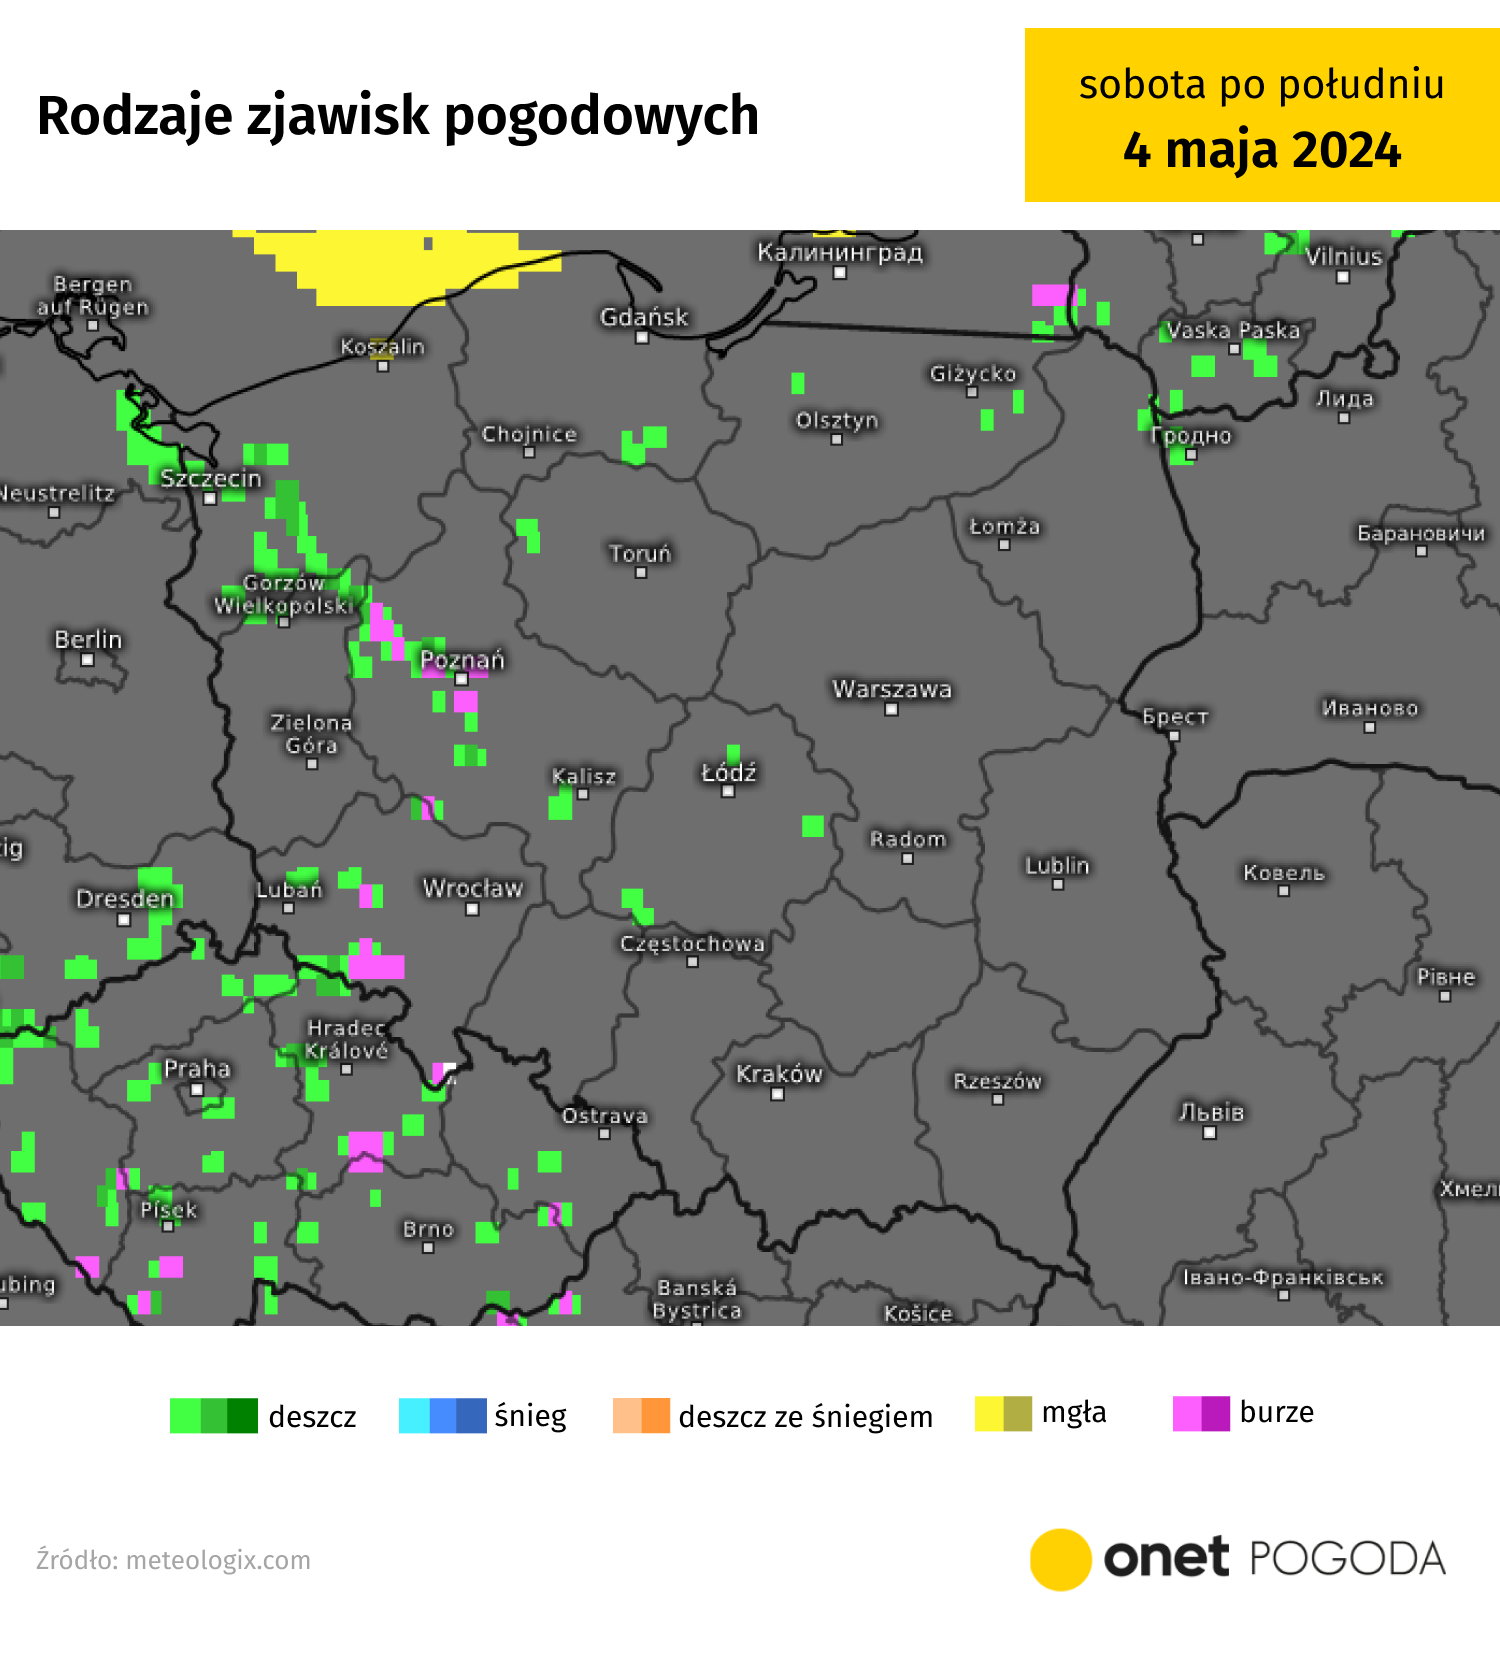 deszcze i burze opanują polskę. pod koniec majówki pogoda stanie się niebezpieczna